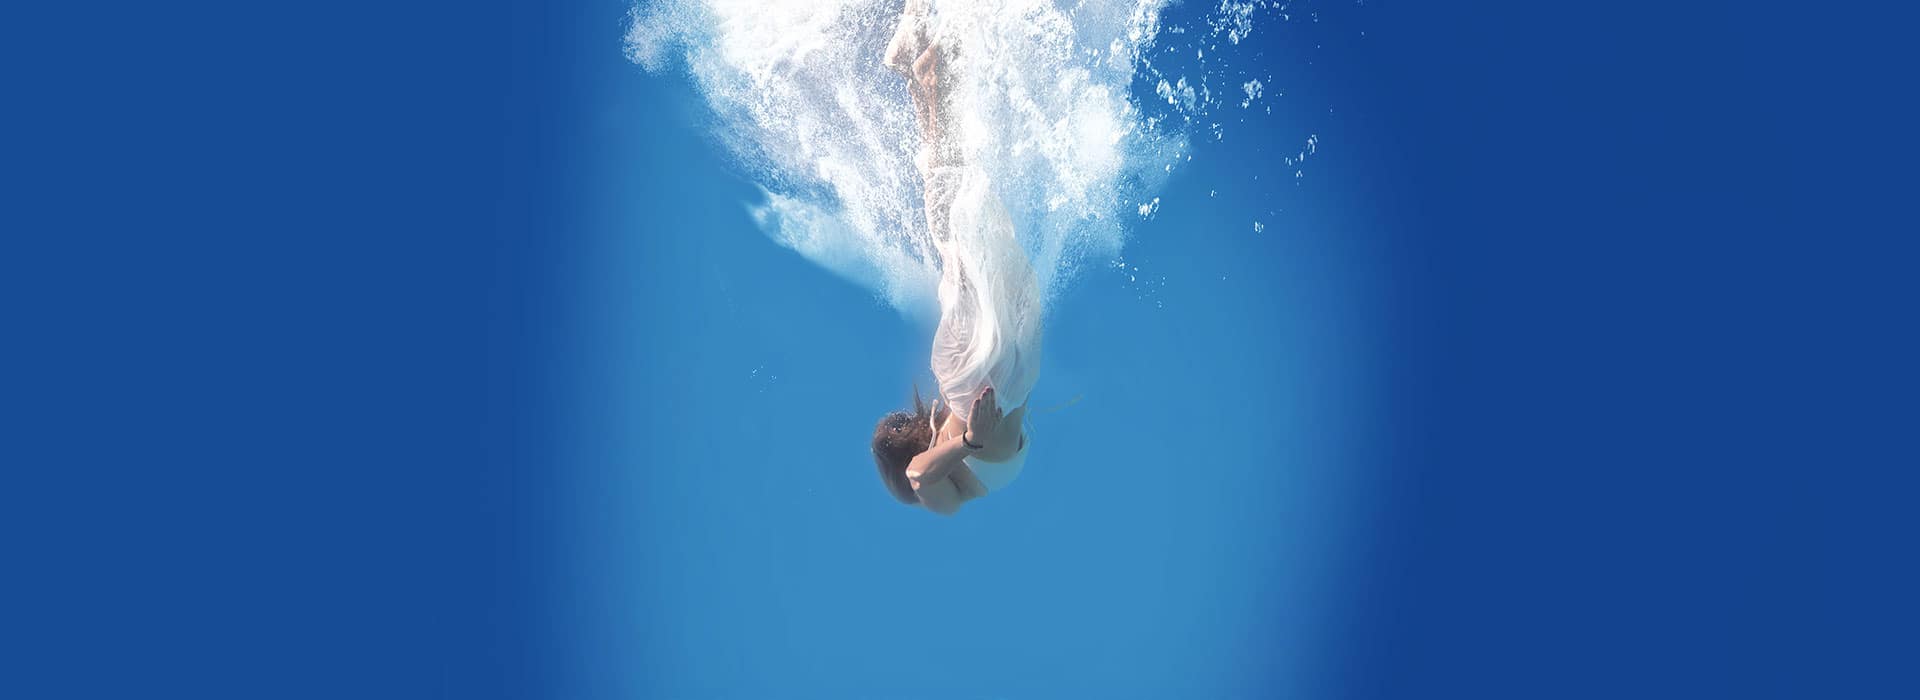 Vital'Eau-Cover de la fiche projet présentant une femme plongeant dans l'eau